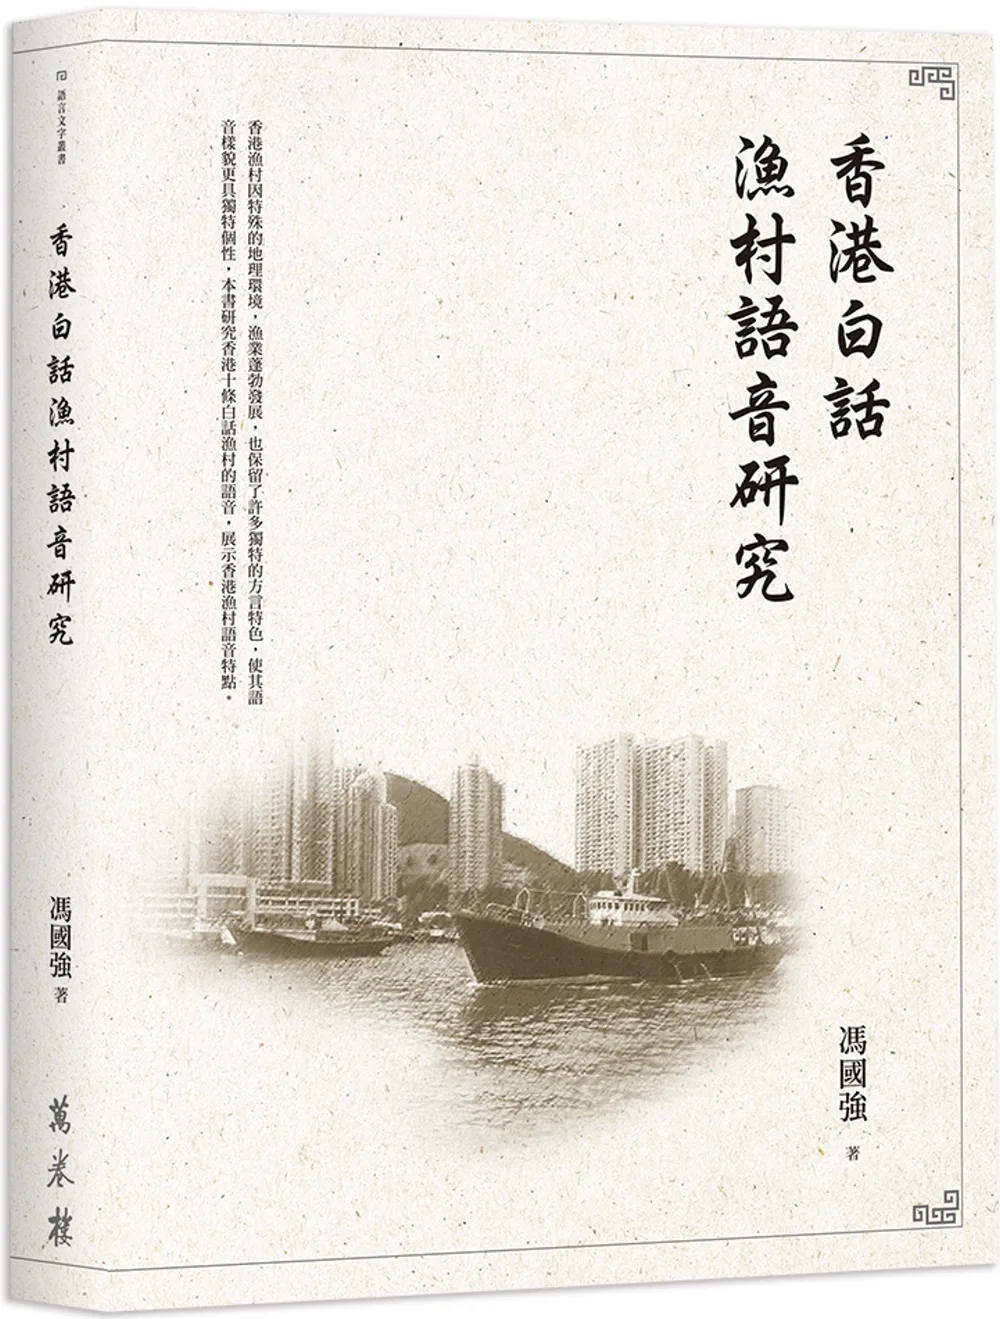 香港白話漁村語音研究